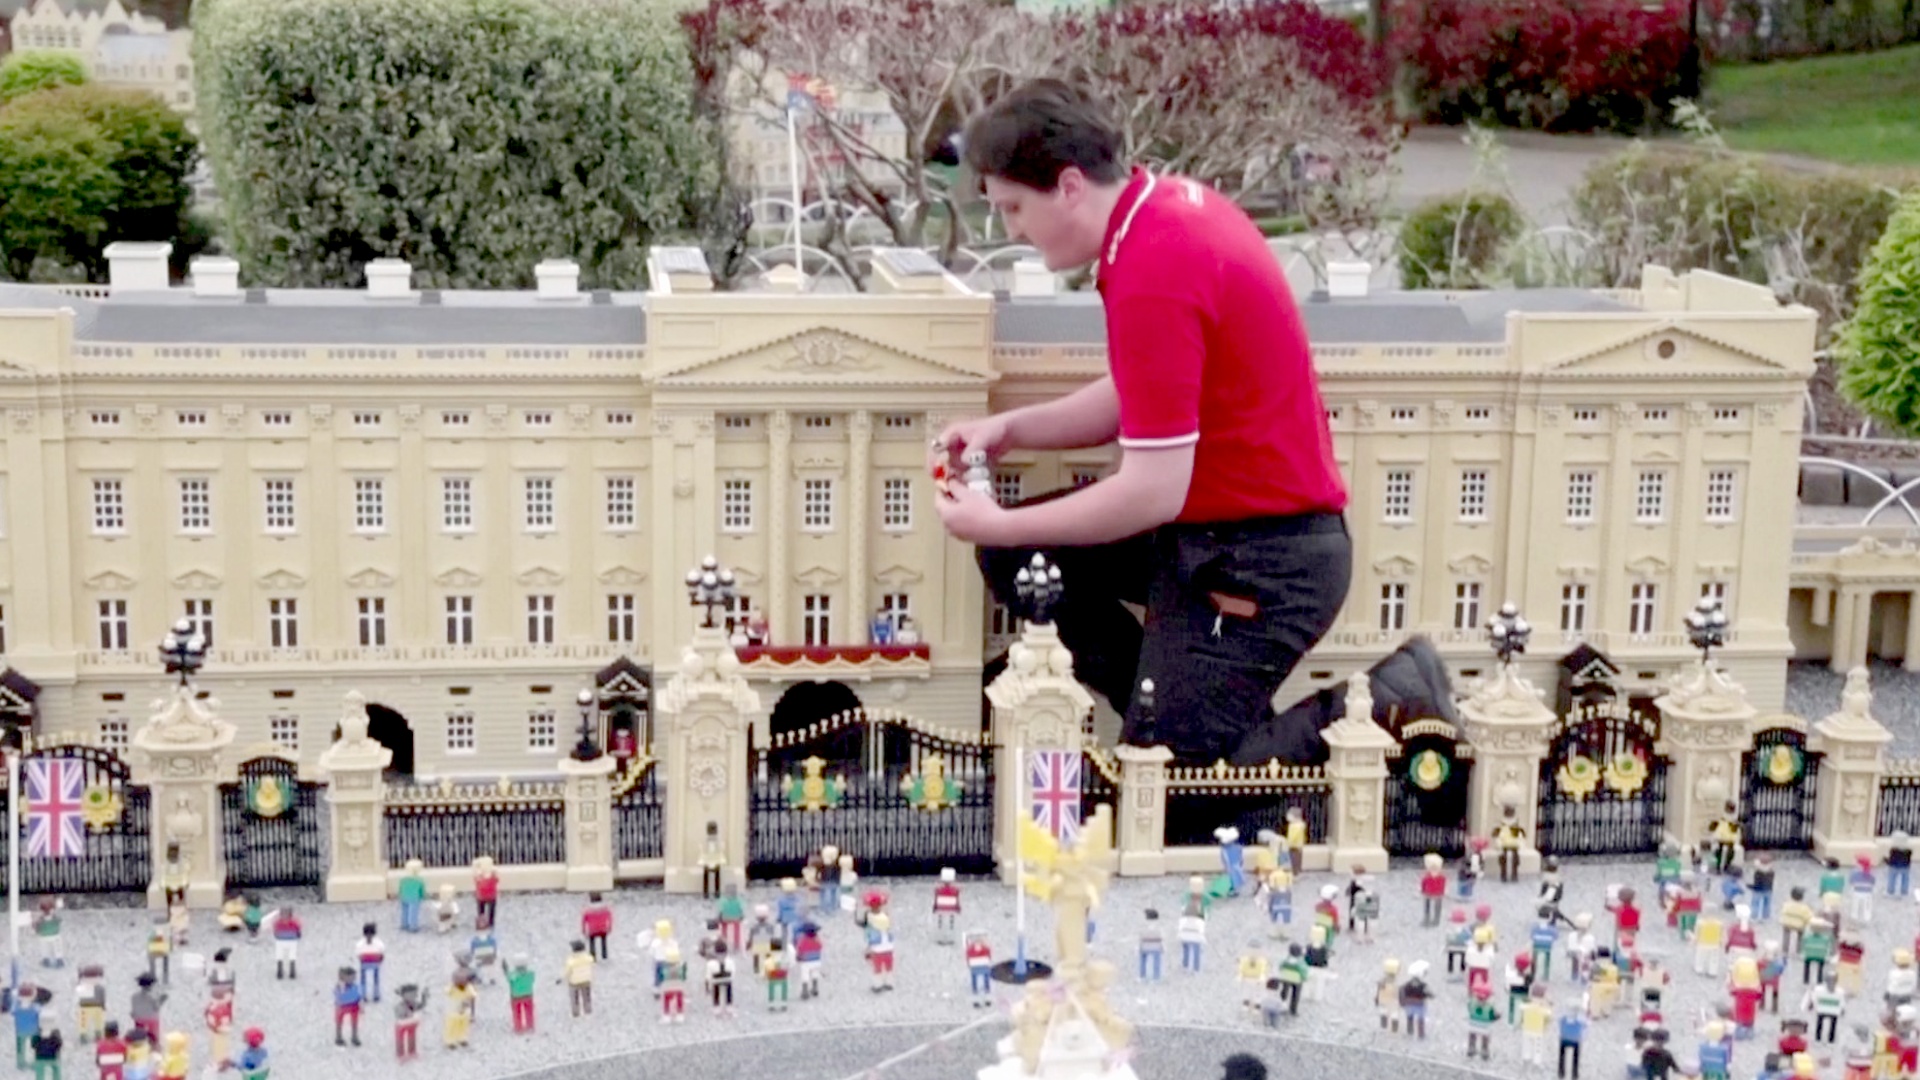 Lego-версию коронации короля Карла III создали в парке развлечений в Виндзоре